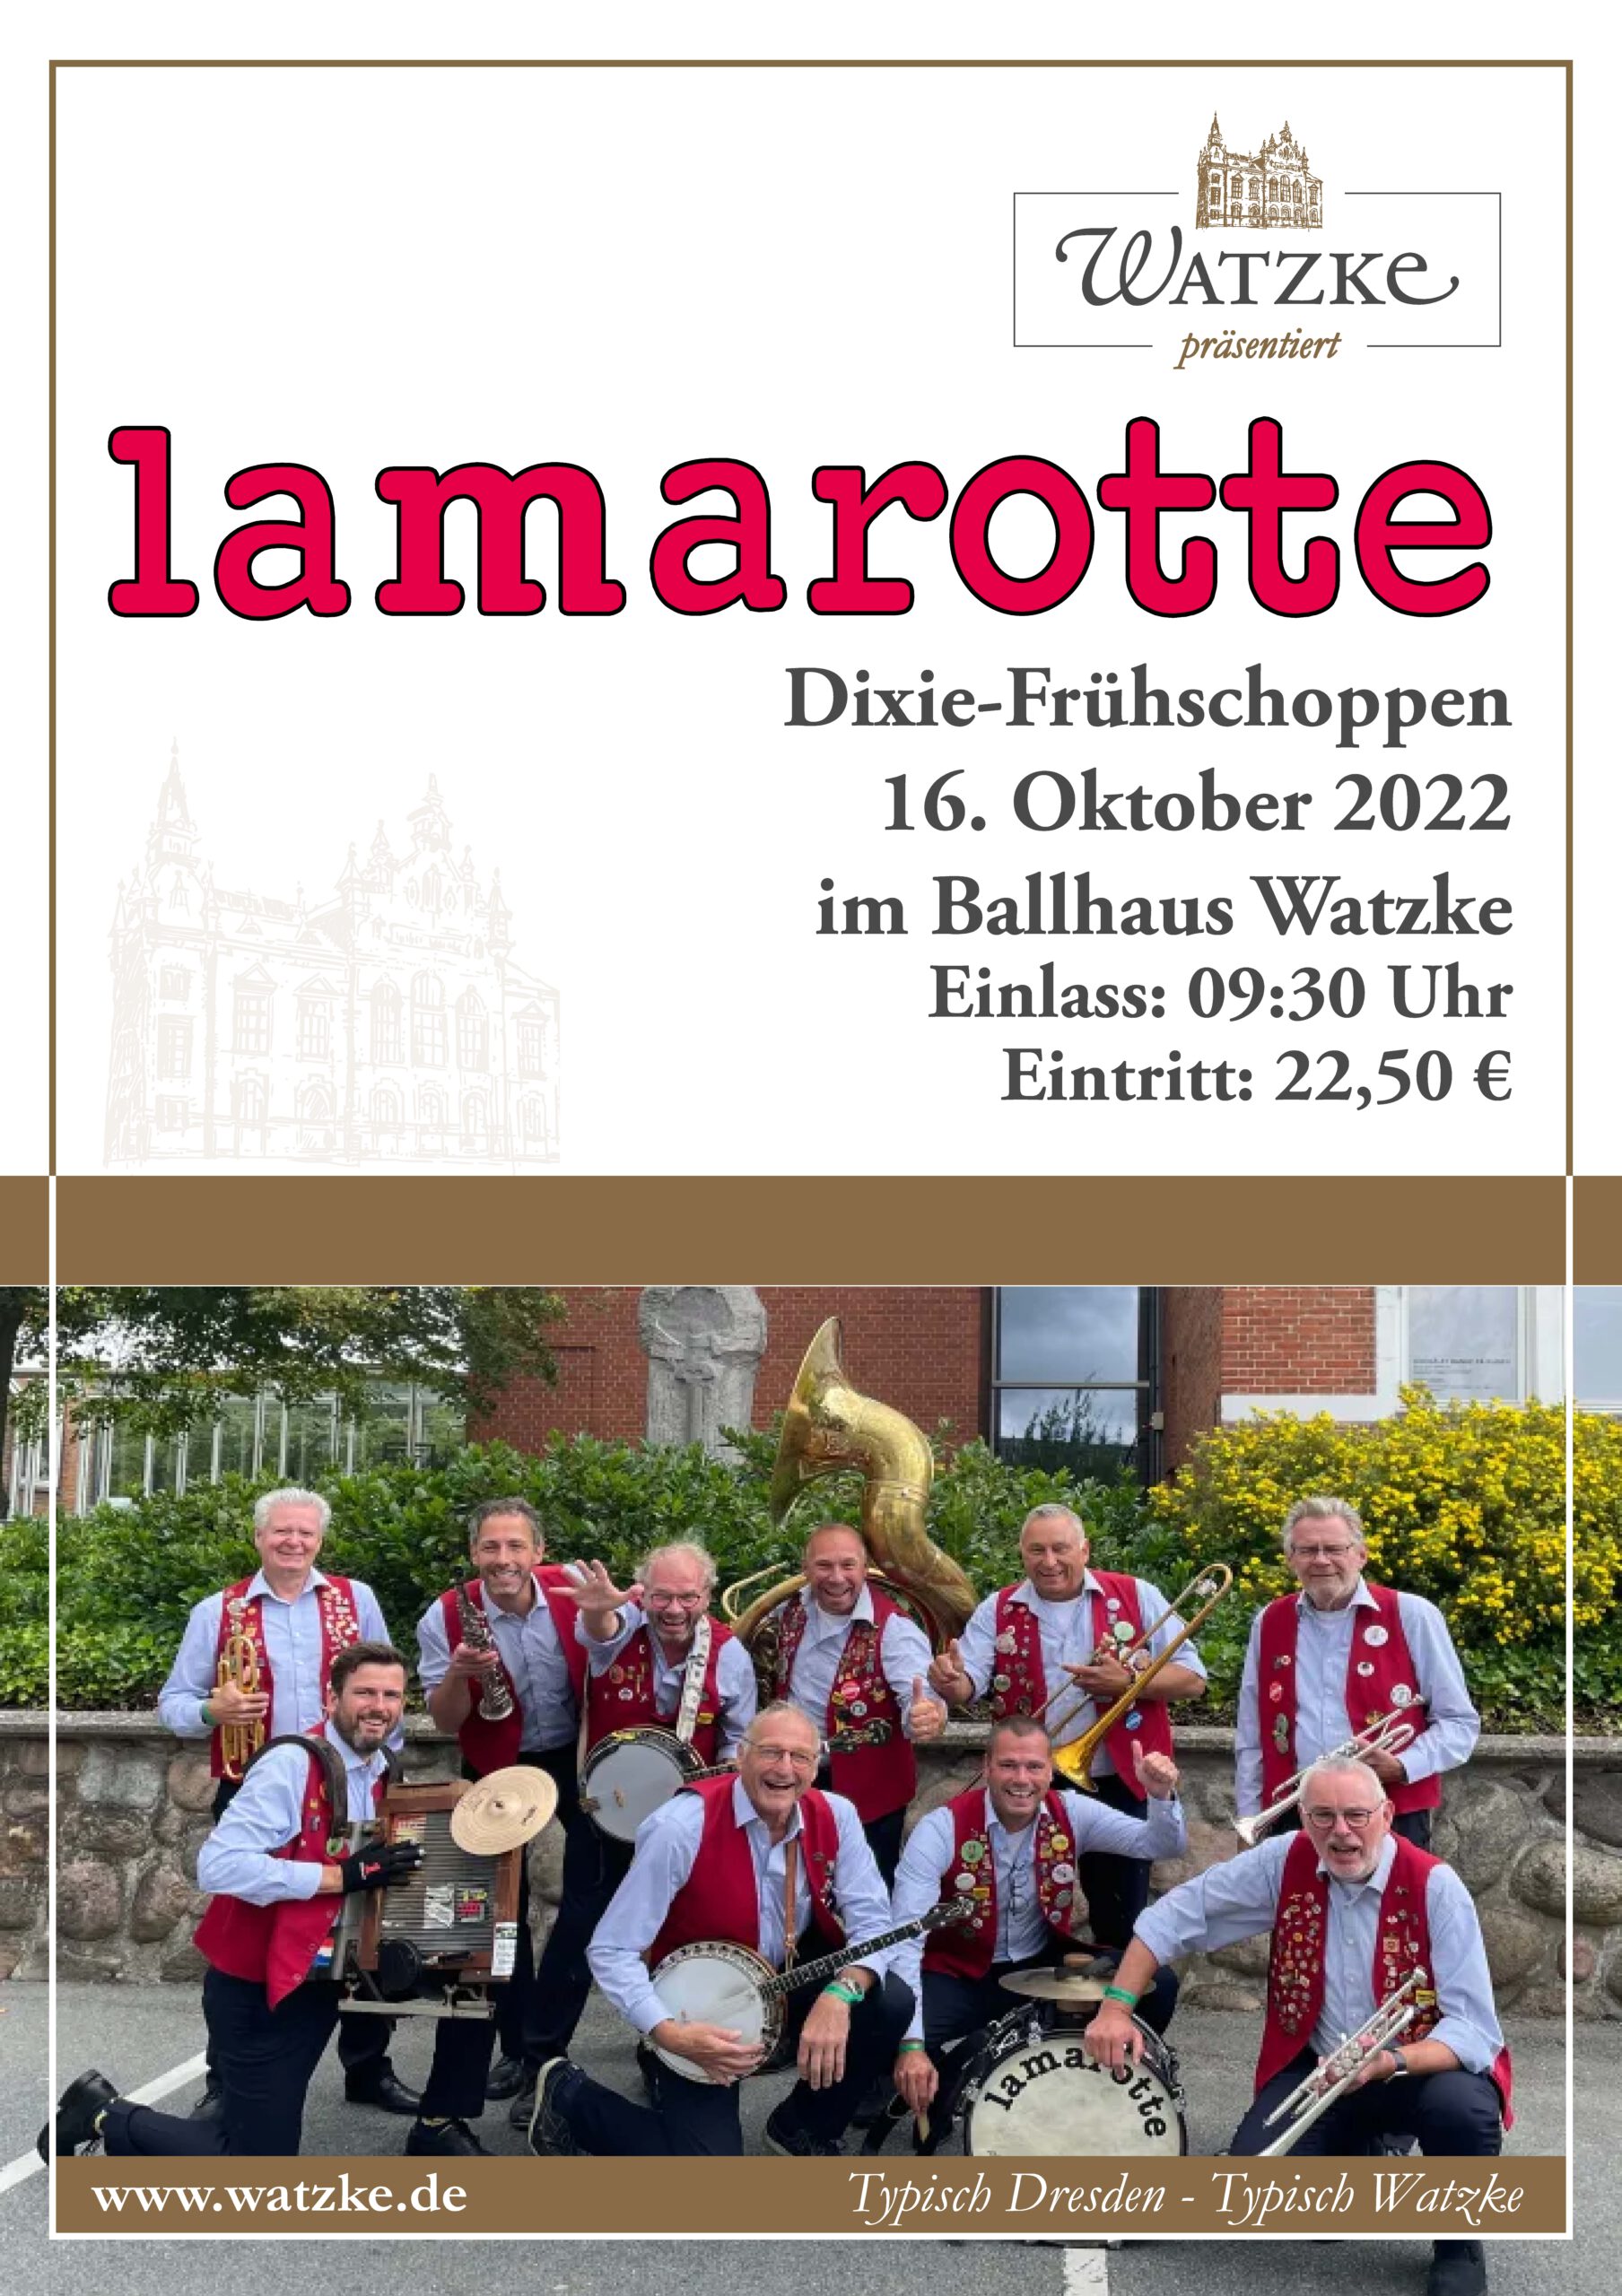 Veranstaltungsoplakat zum Dixi-Fruehschoppen mit Lamarotte im Ball und Brauhaus Watzke am 16.10.22, die Band posiert mit Ihren Instrument in Ihren roten Westen